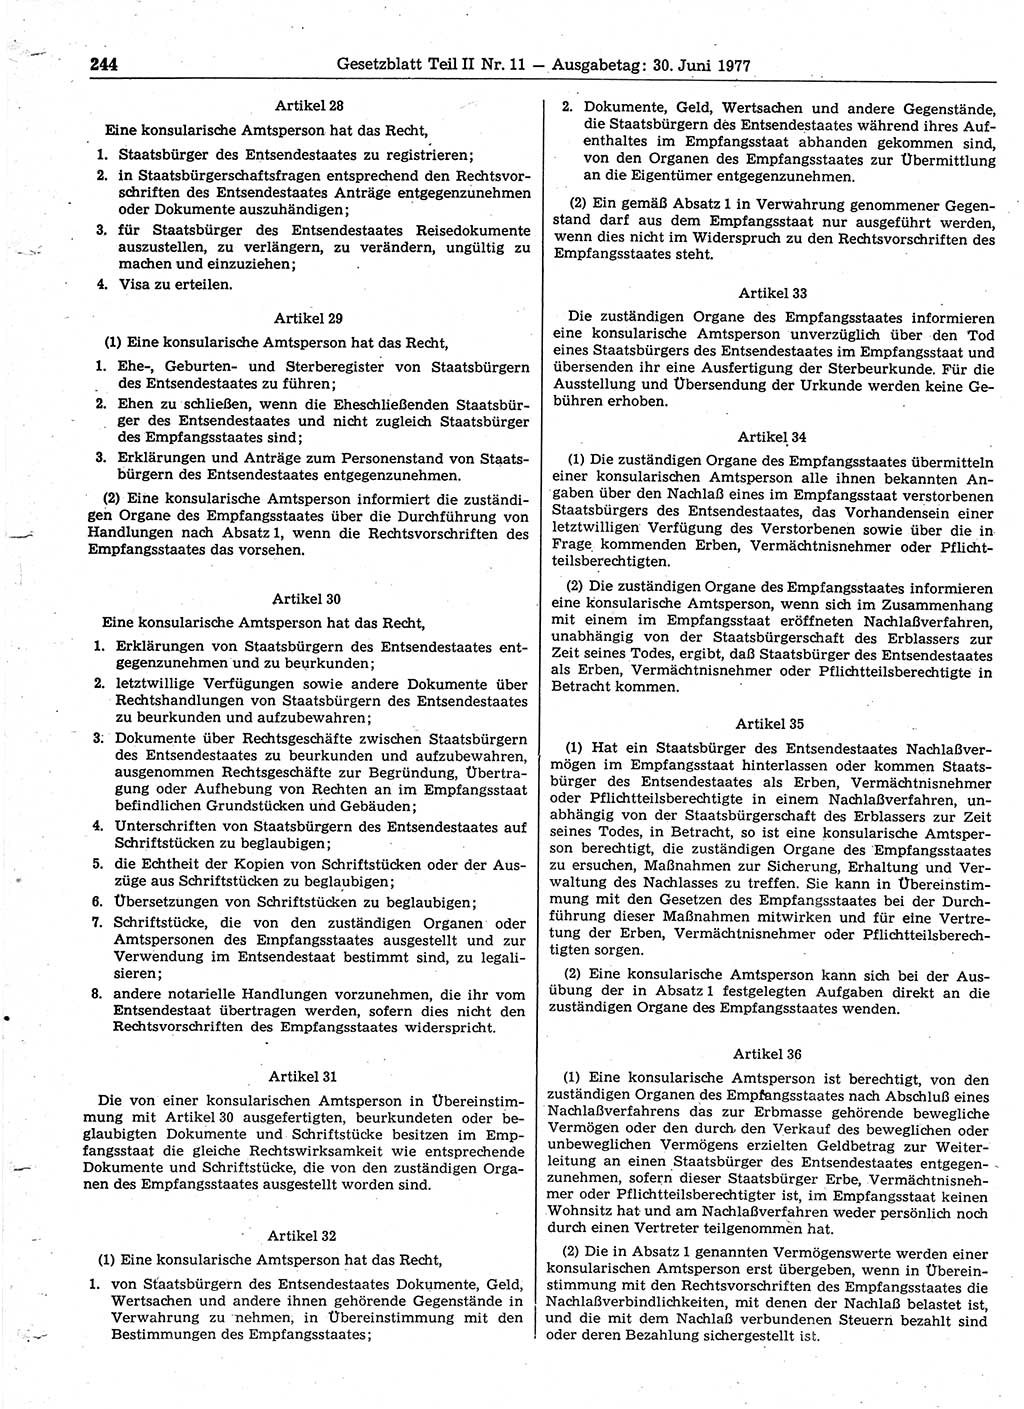 Gesetzblatt (GBl.) der Deutschen Demokratischen Republik (DDR) Teil ⅠⅠ 1977, Seite 244 (GBl. DDR ⅠⅠ 1977, S. 244)